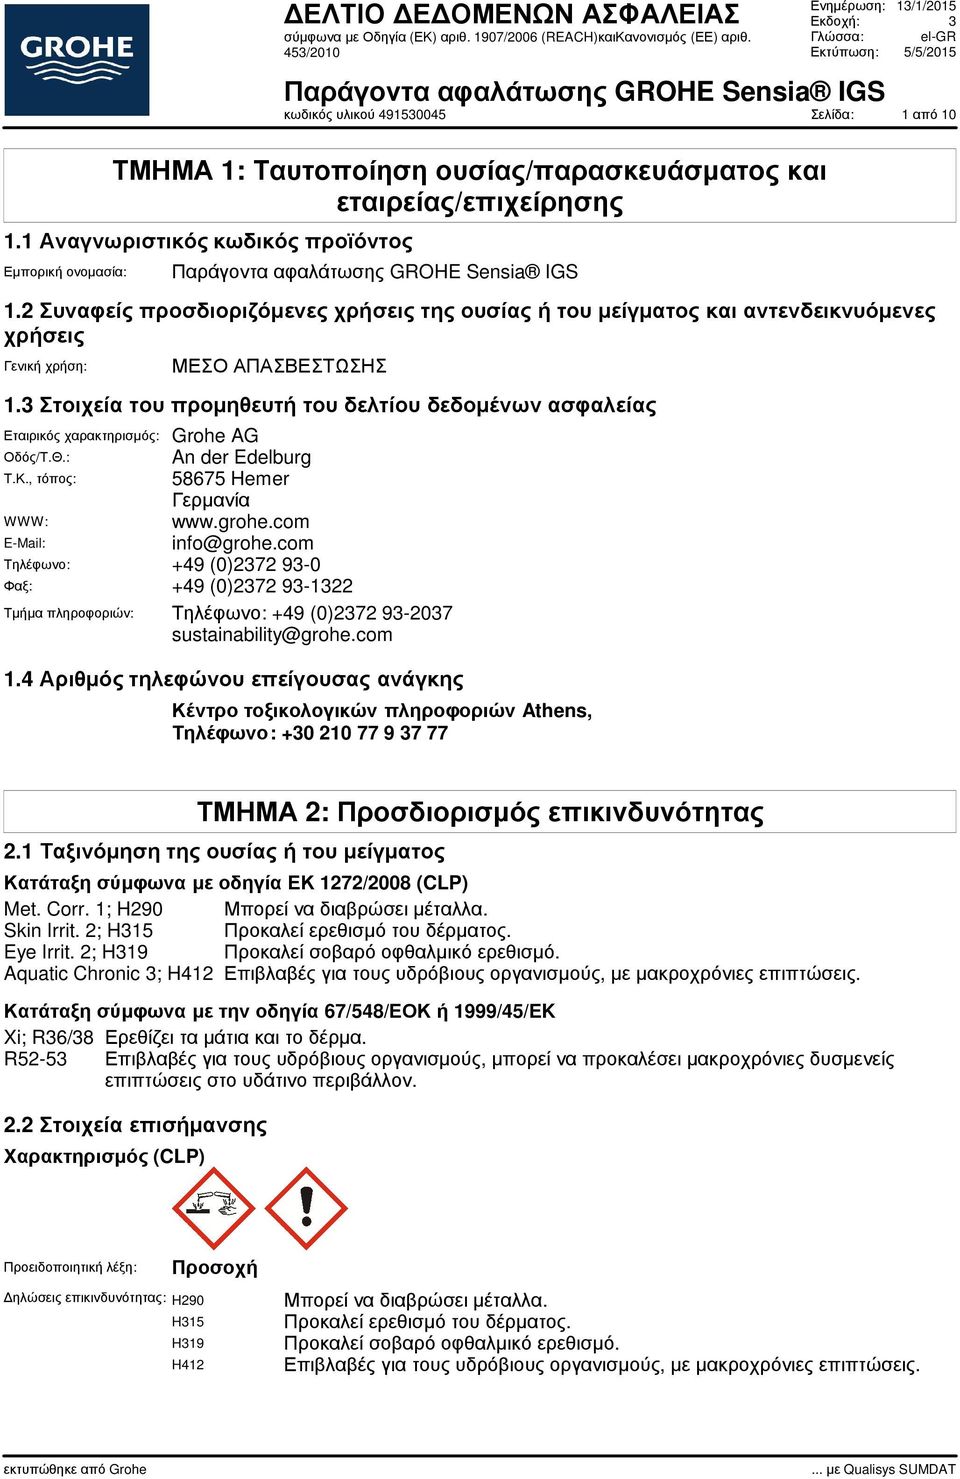 3 Στοιχεία του προµηθευτή του δελτίου δεδοµένων ασφαλείας Εταιρικός χαρακτηρισµός: Grohe AG Οδός/Τ.Θ.: An der Edelburg Τ.Κ., τόπος: 58675 Hemer Γερµανία WWW: www.grohe.com E-Mail: info@grohe.